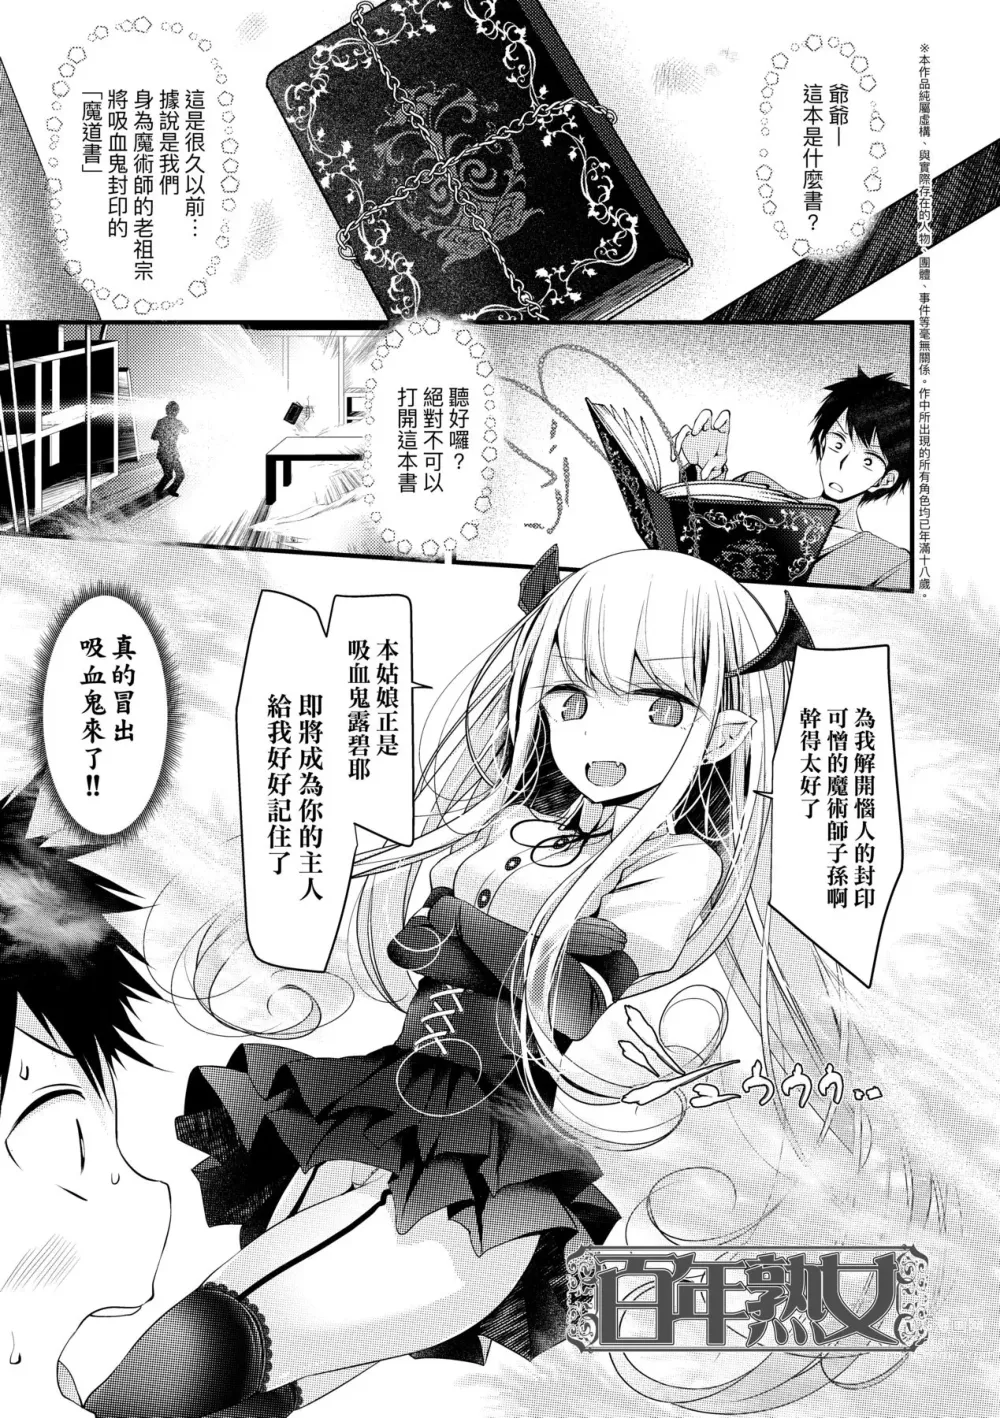 Page 26 of manga 年上的少女你也很喜歡吧? (decensored)